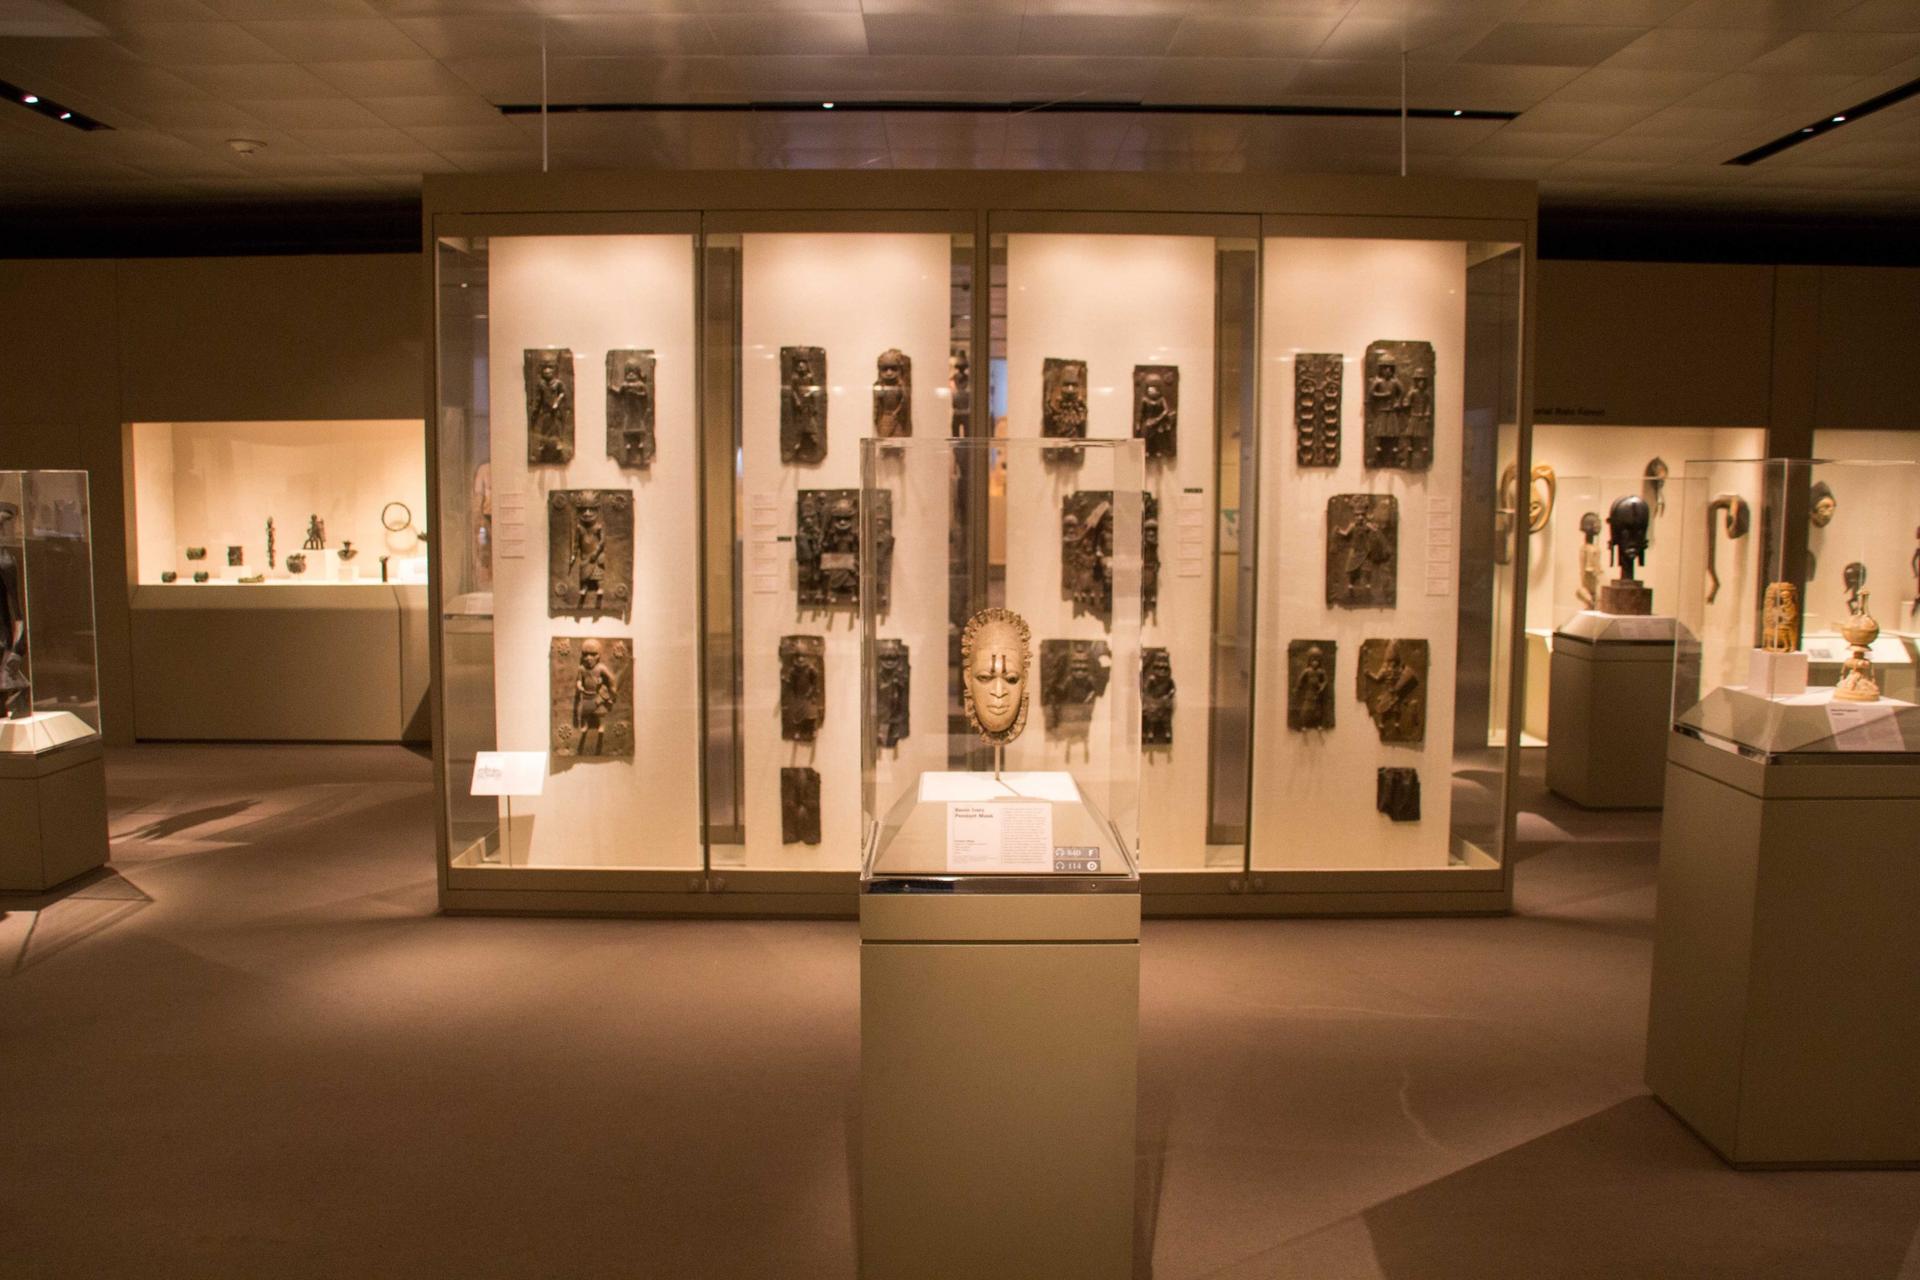 Benin bronzes at the Metropolitan Museum of Art in New York City. Photo was taken in 2017.